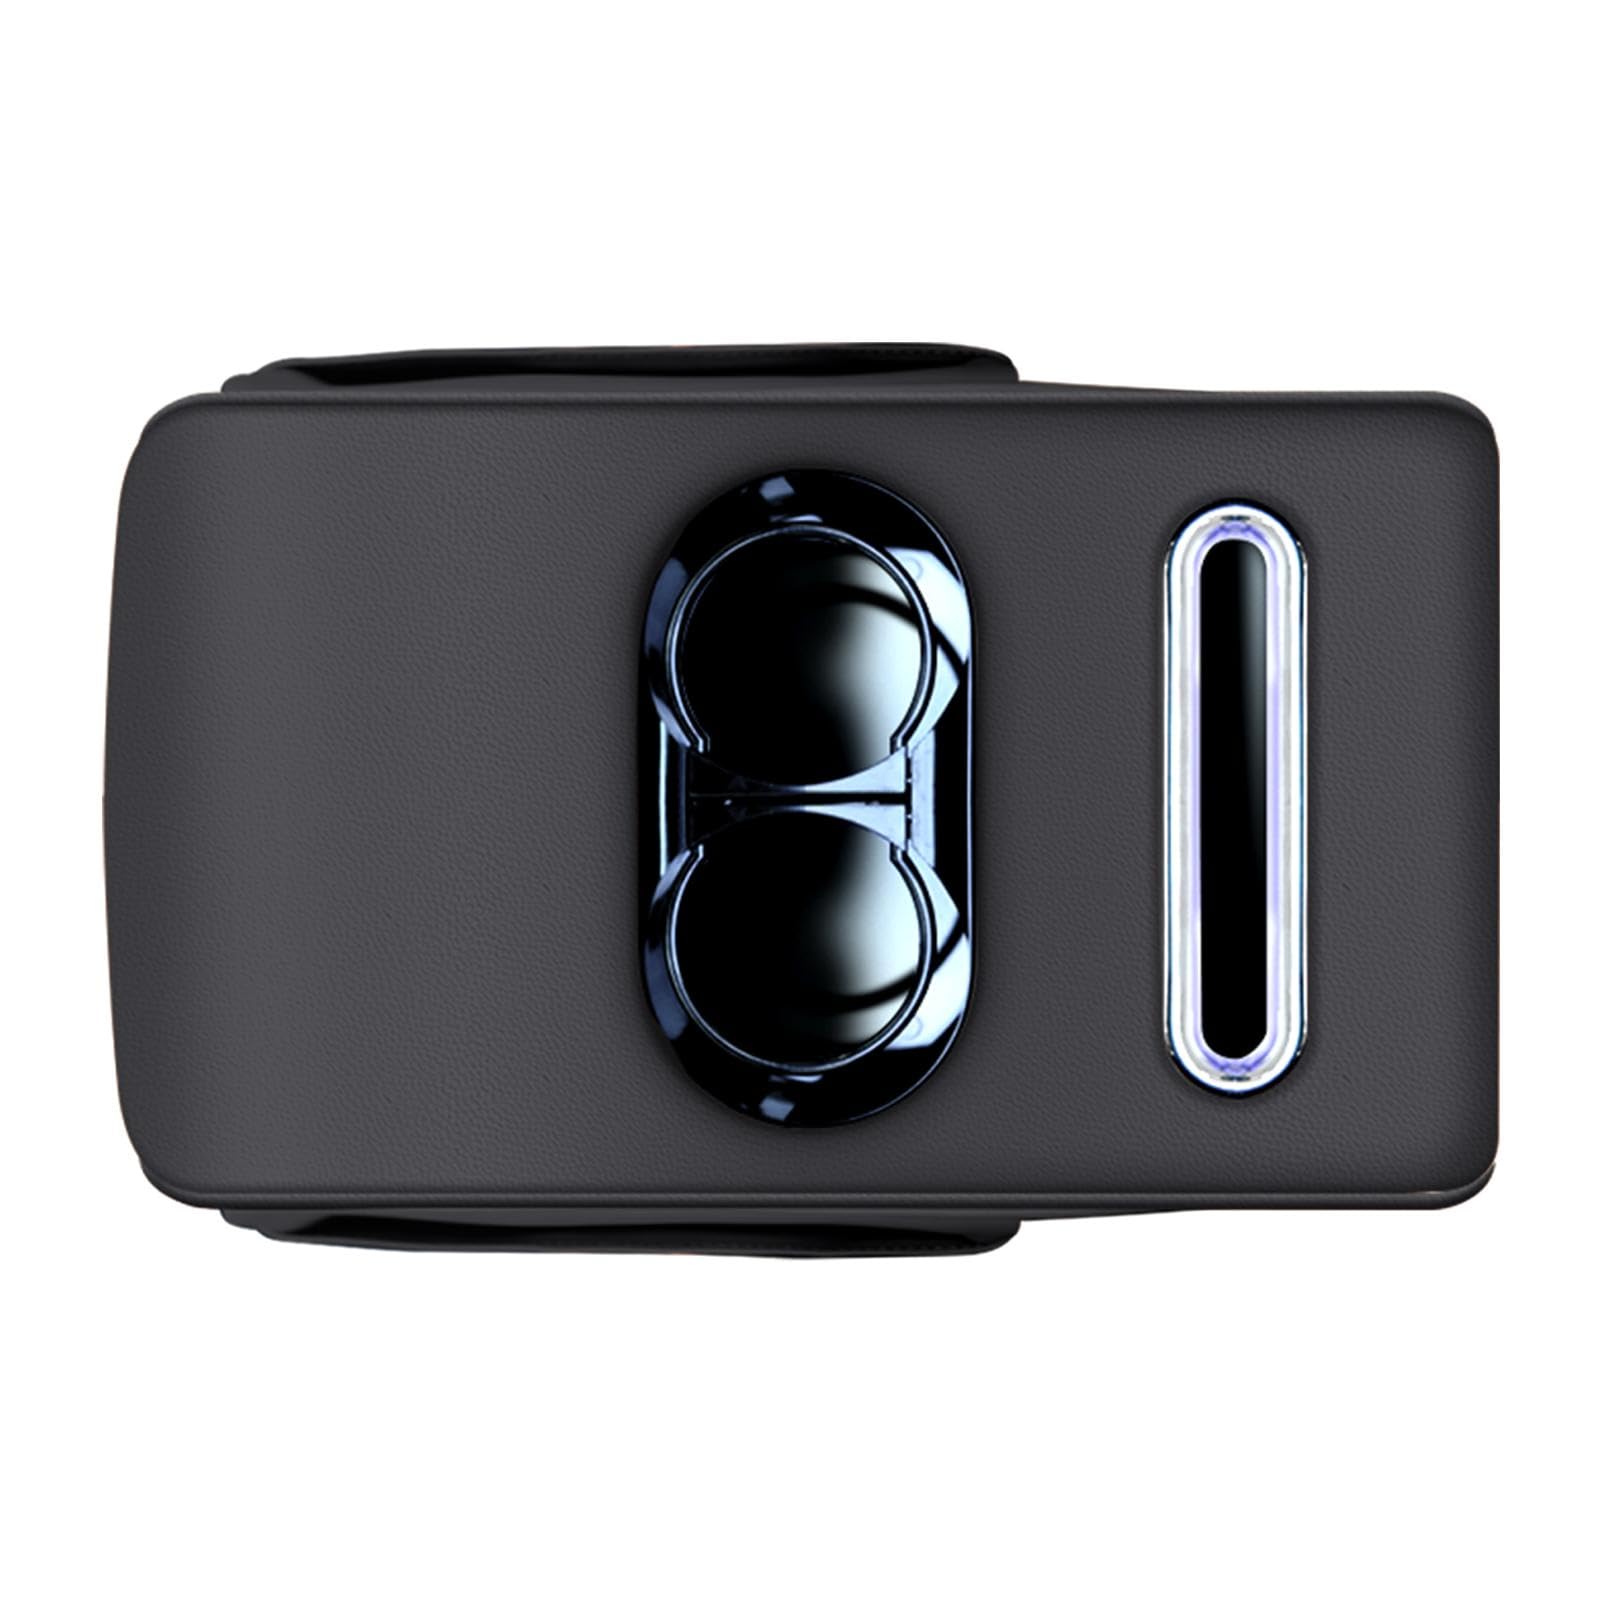 Poupangke Auto-Aufbewahrungsbox mit Getränkehalter – Aufbewahrungsbox für die Konsole im Auto, multifunktionale Fahrzeugkonsole, Sitz, Handy, Getränkehalter mit Seitentasche für Wasserbecher von Poupangke